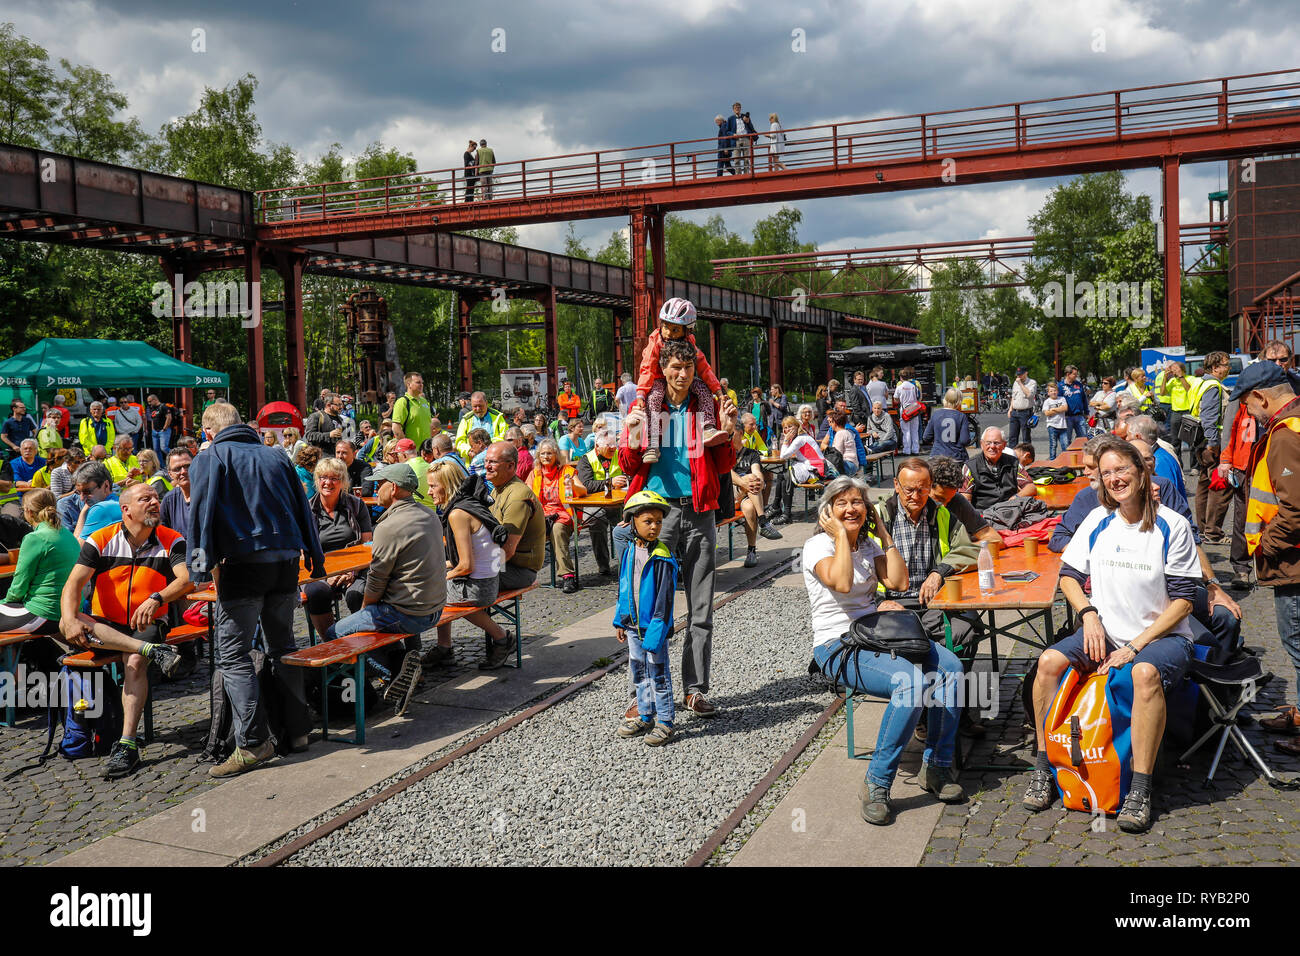 Essen, Ruhrgebiet, Nordrhein-Westfalen, Deutschland - Stadt Radfahren, Radfahren für ein gutes Klima, ein Ereignis, eine Kampagne des Klima-bündnis, hier Ankunft am Stockfoto